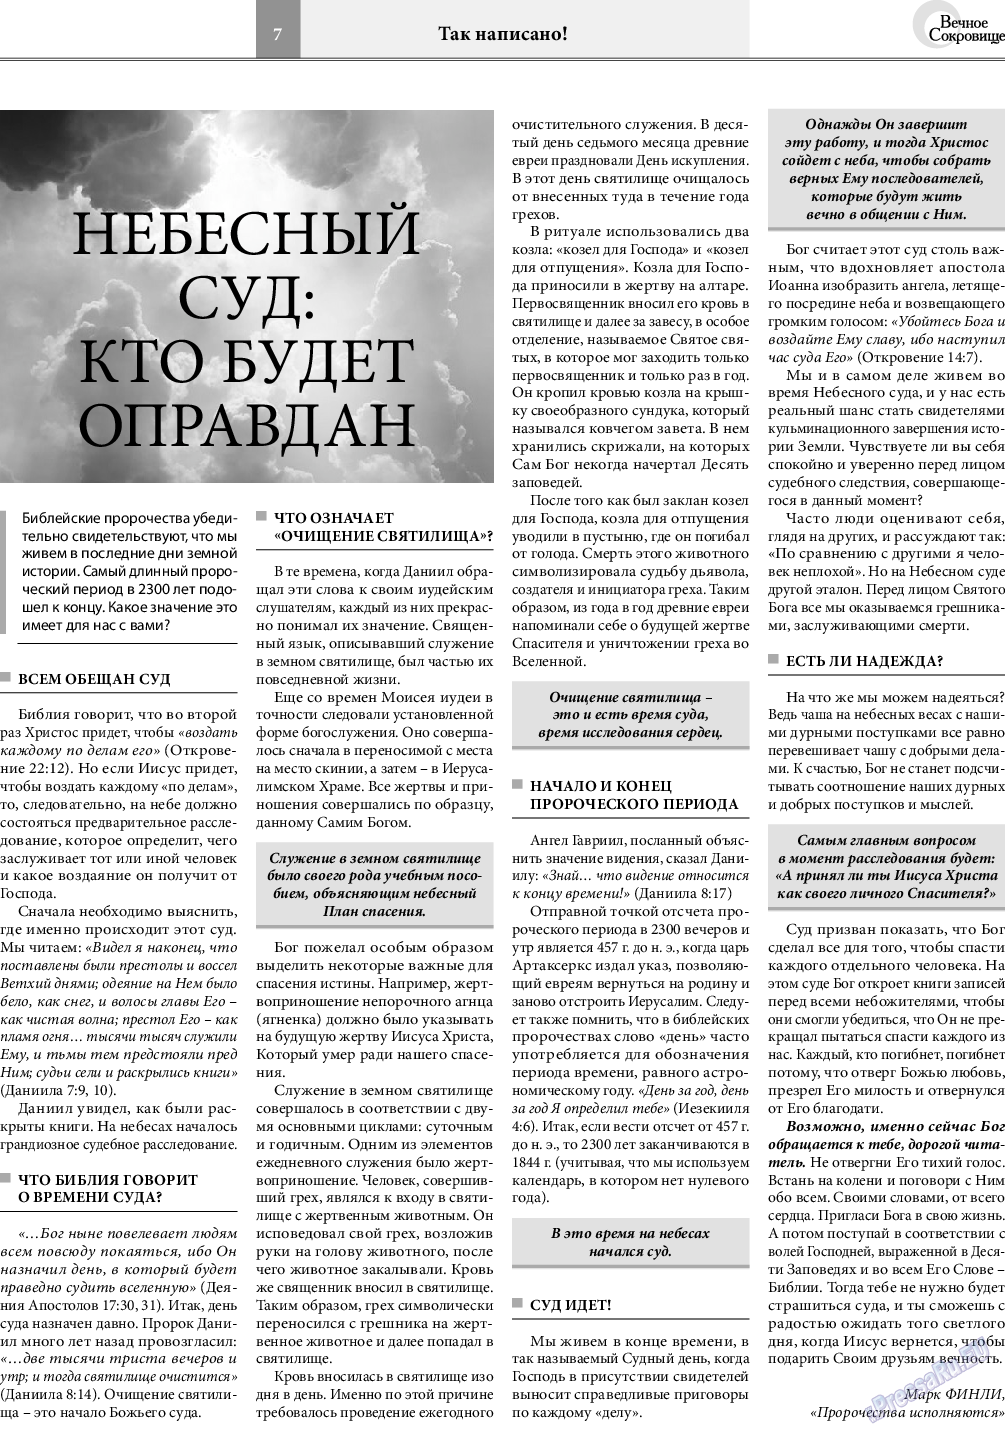 Вечное сокровище, газета. 2020 №5 стр.7